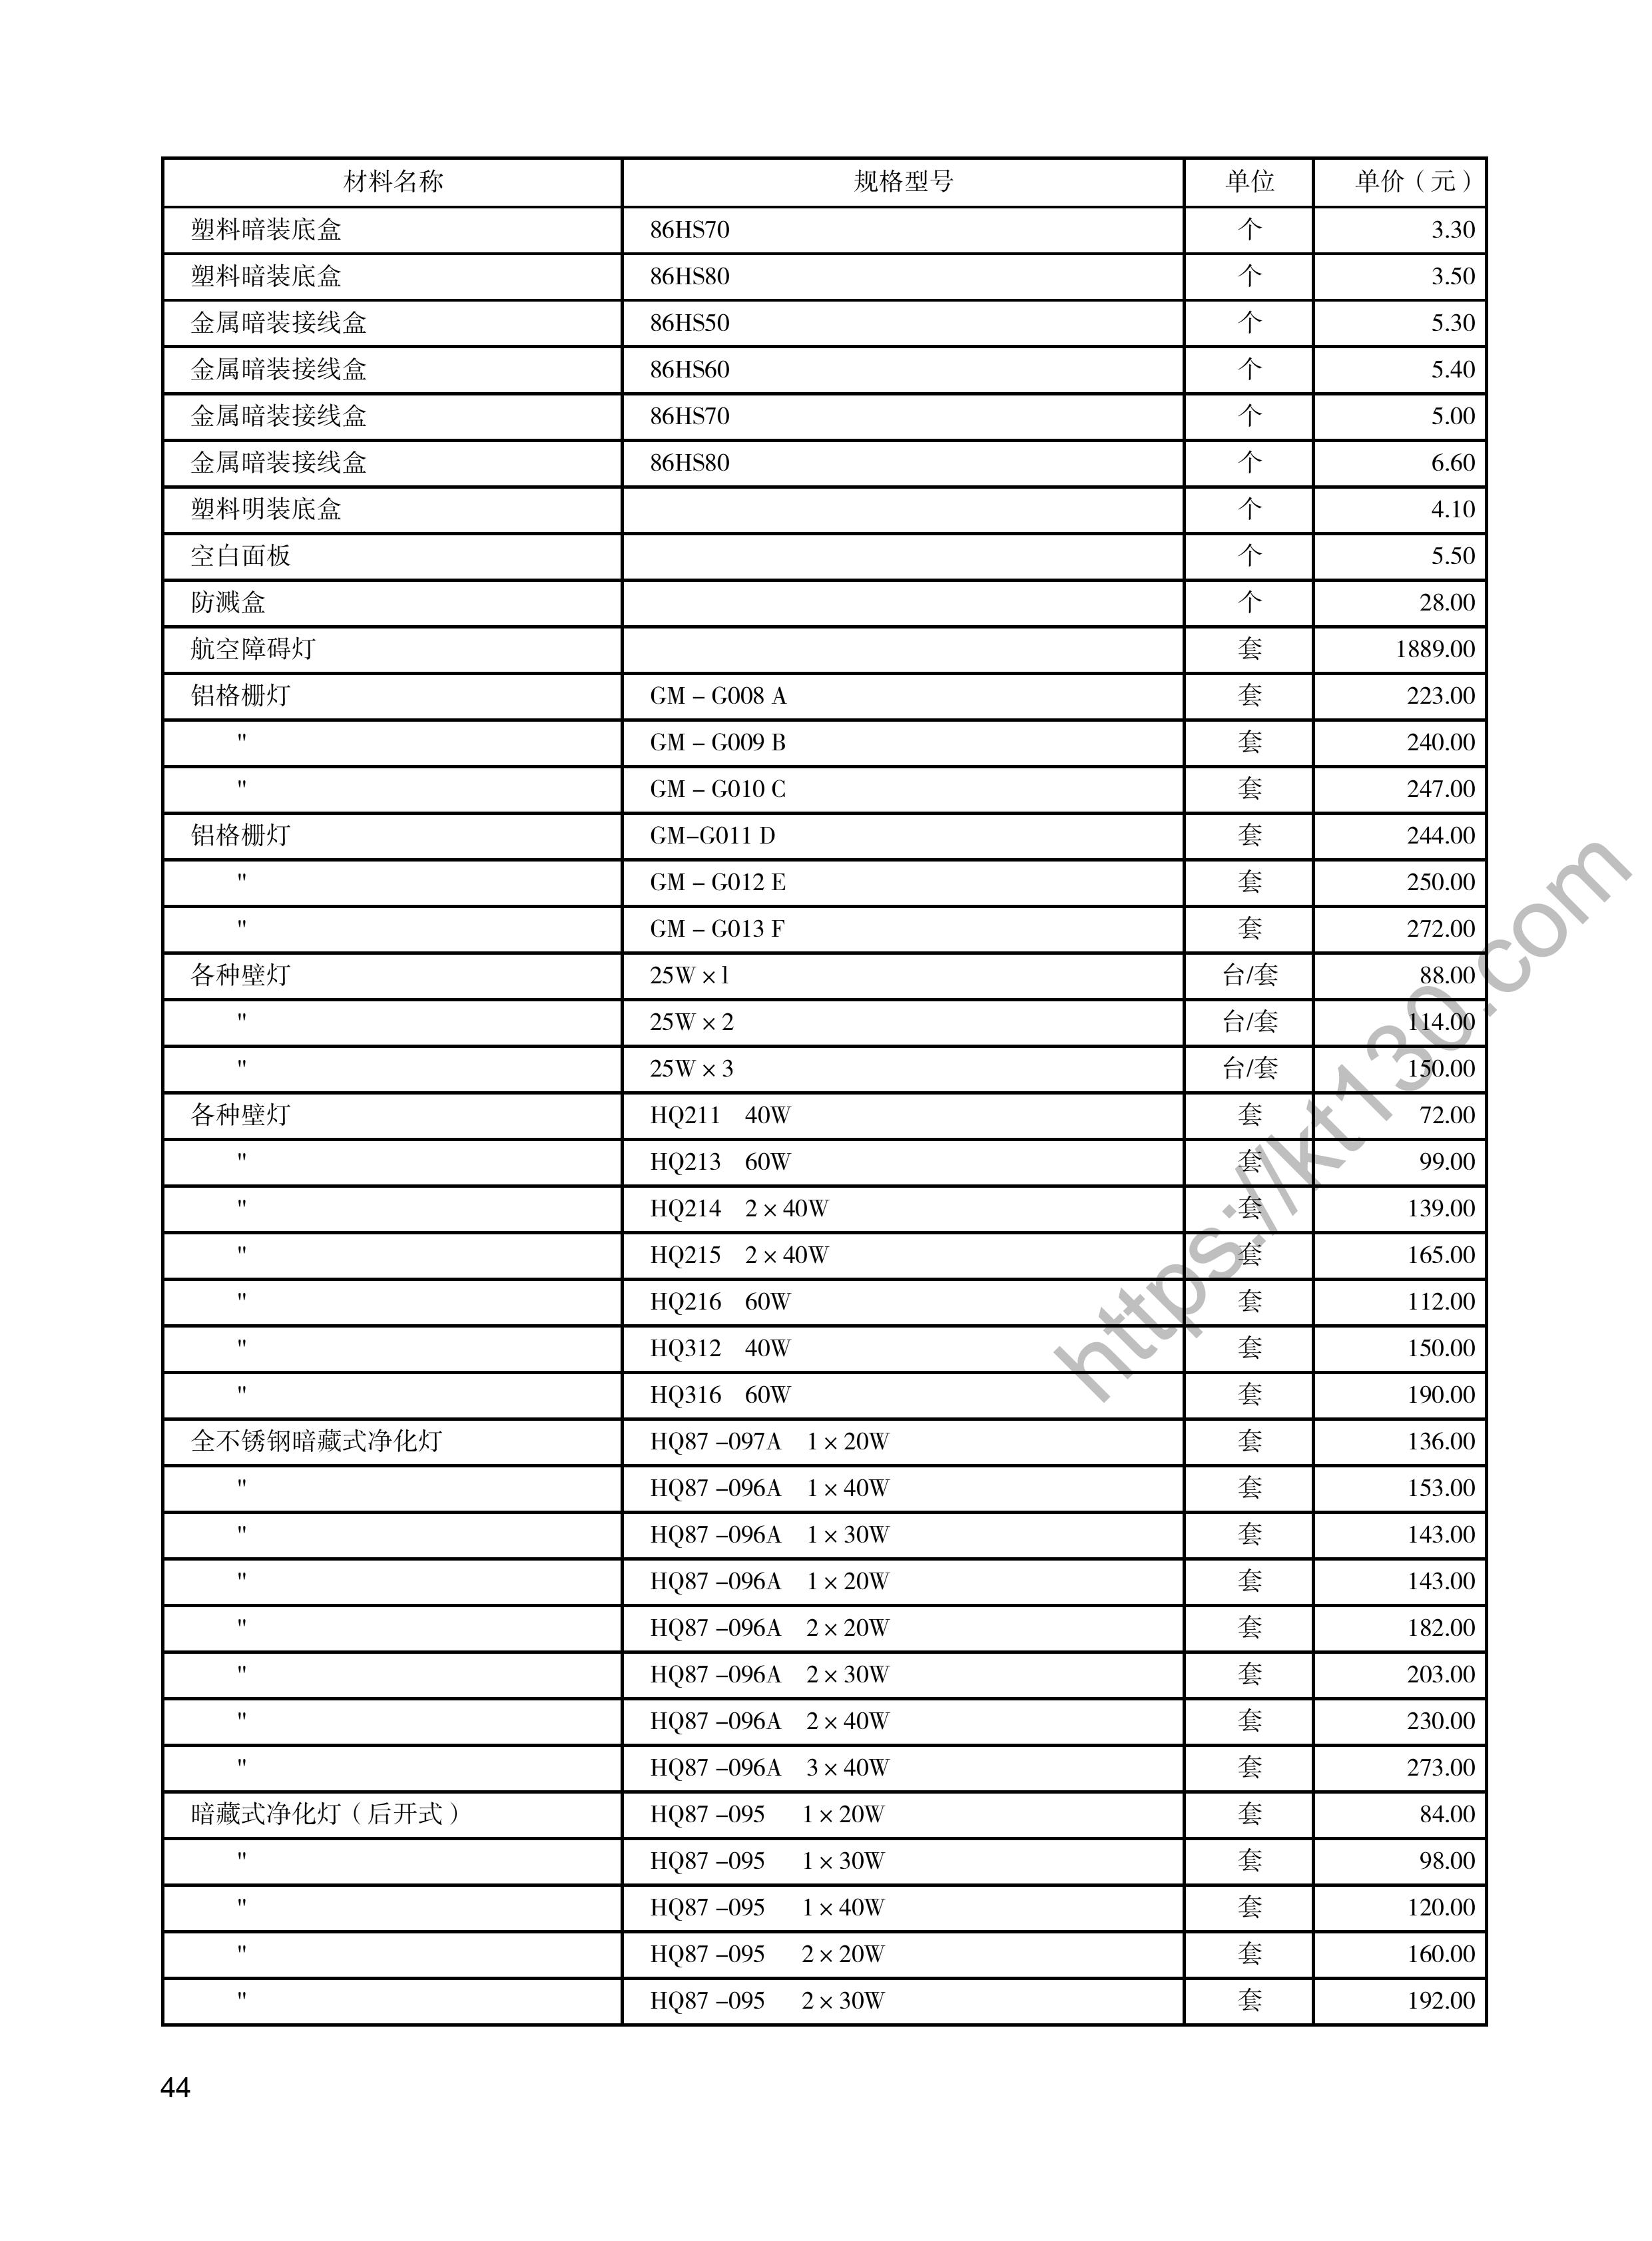 陕西省2022年4月建筑材料价_开关、插座、灯具_48164